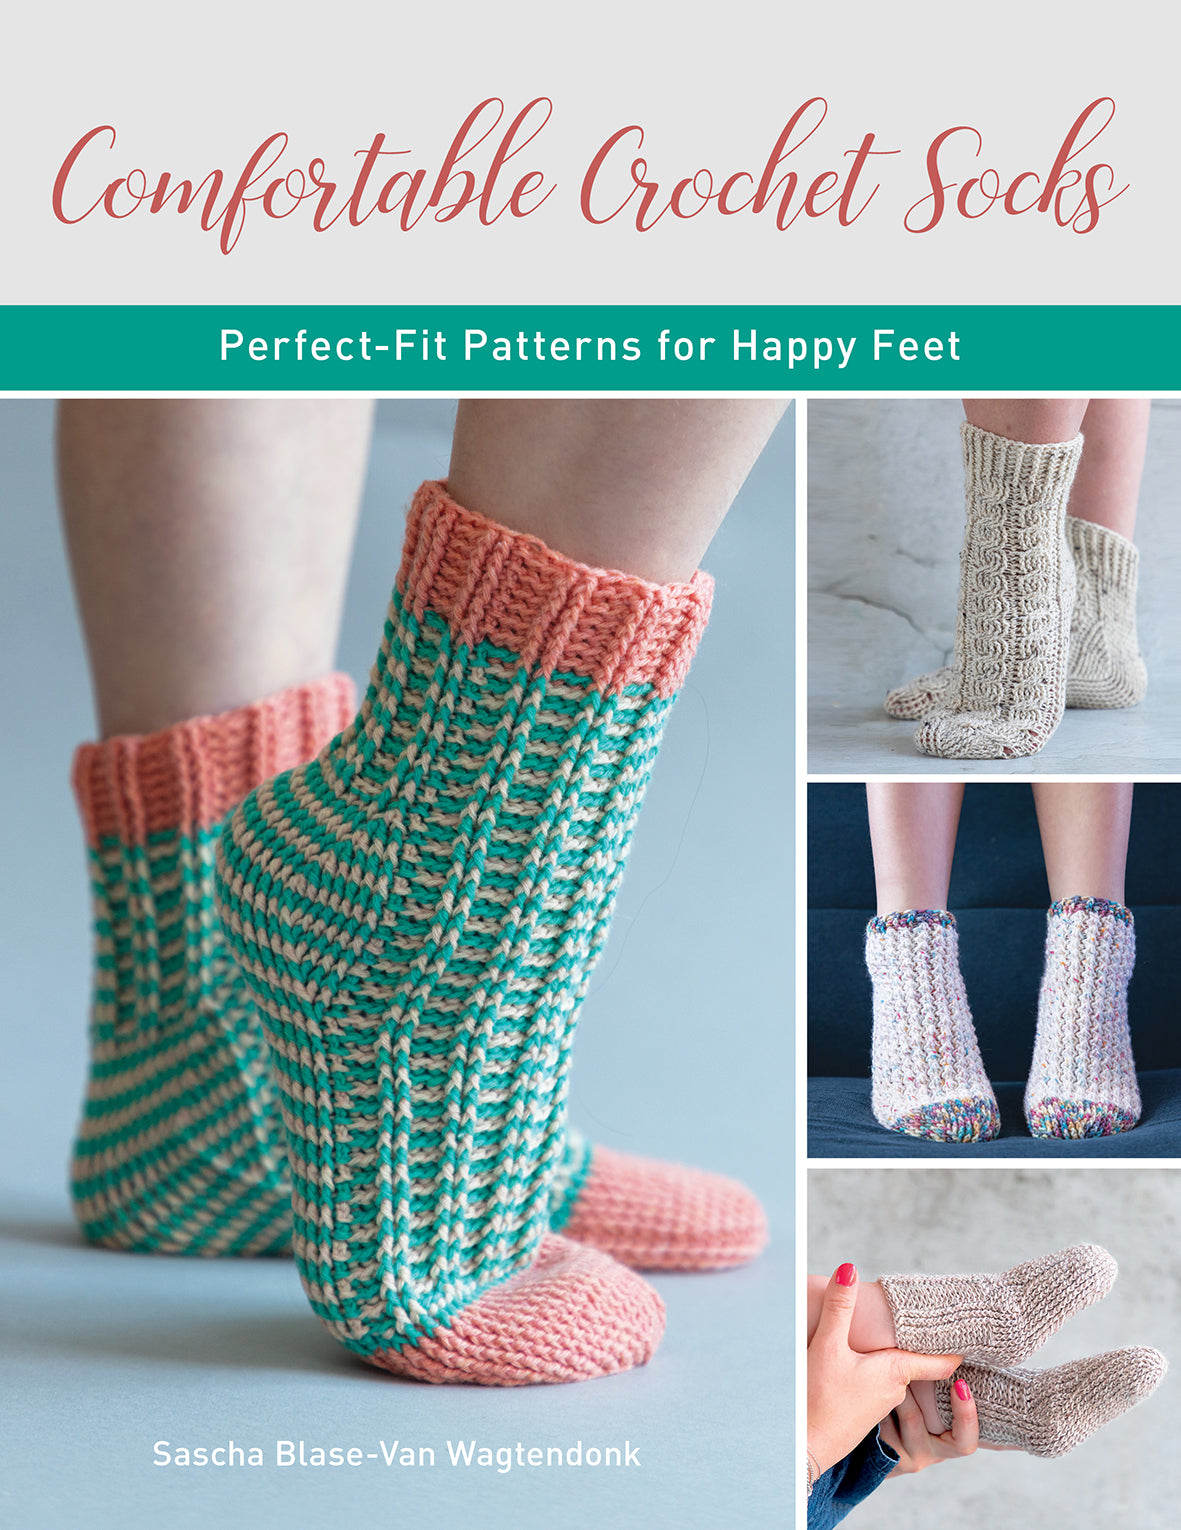 Comfortable Crochet Socks | Saccharine Blase-Van Wagtendonk